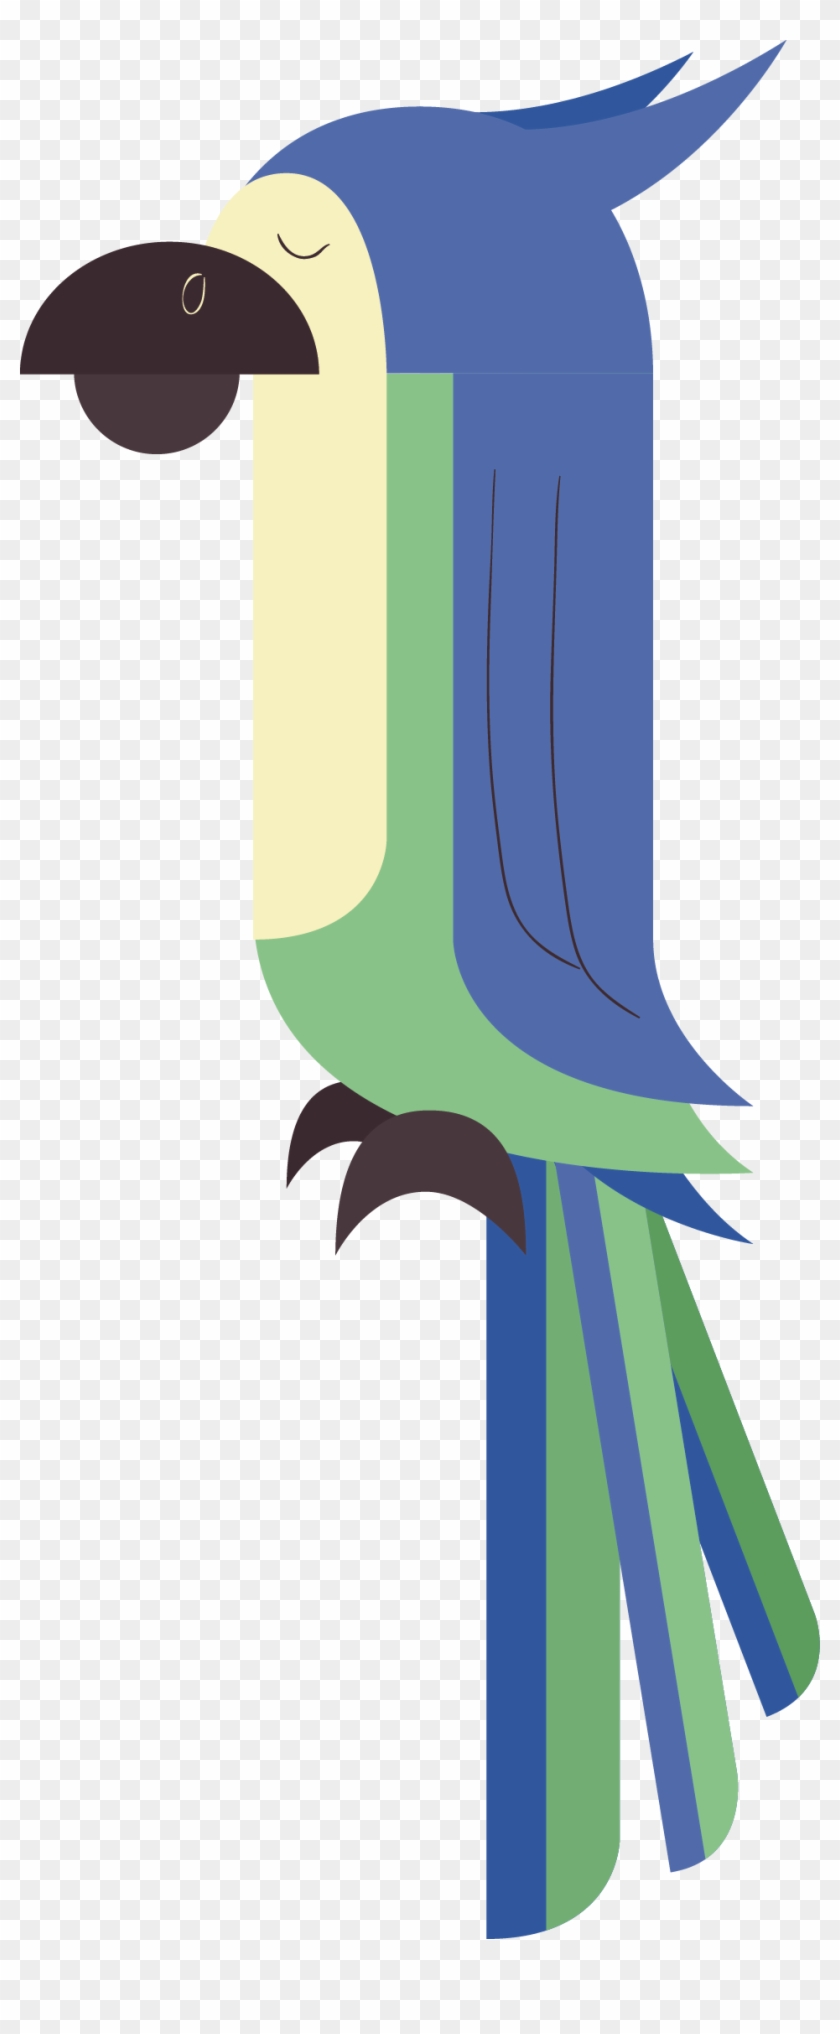 Parrot Bird Beak Clip Art - Parrot Bird Beak Clip Art #335903